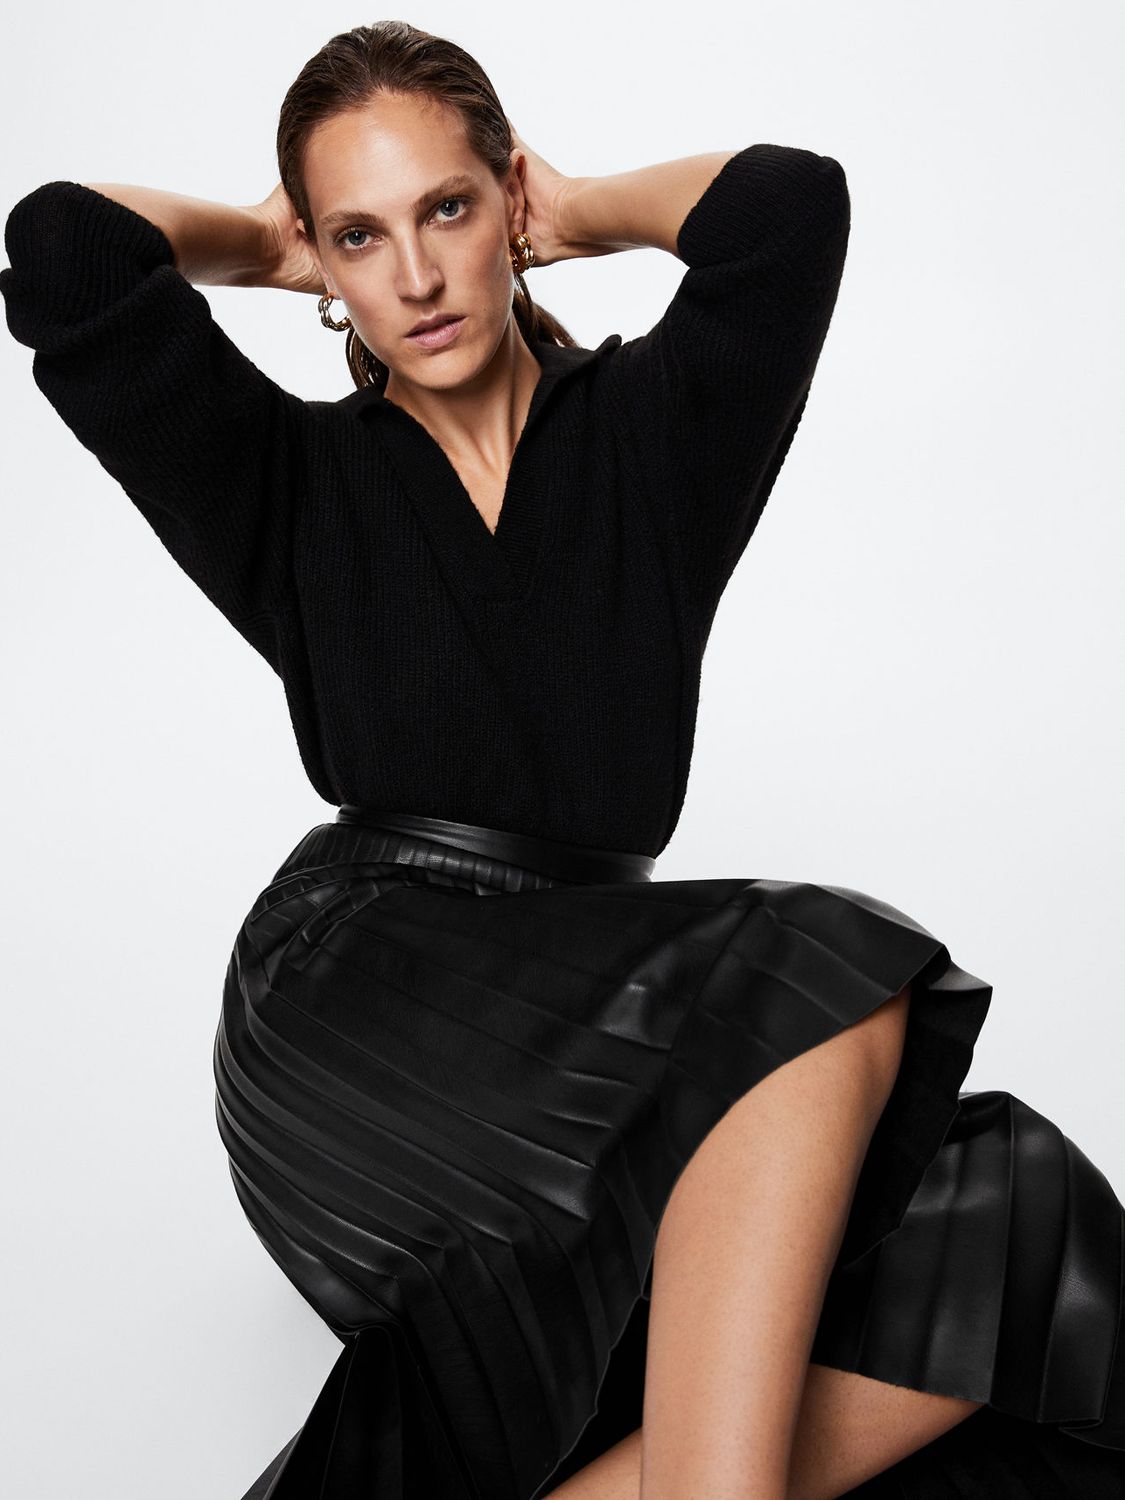 Black pleated skirt - Plümo Ltd